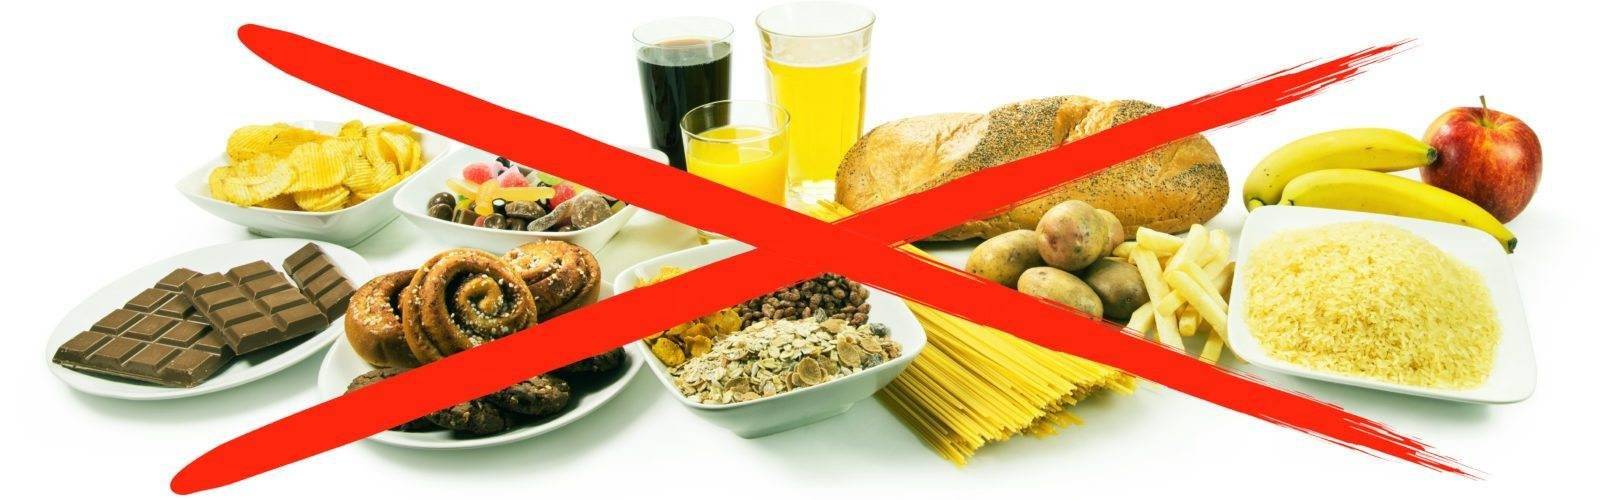 От чего отказаться, чтобы похудеть - список вредных продуктов питания и результаты